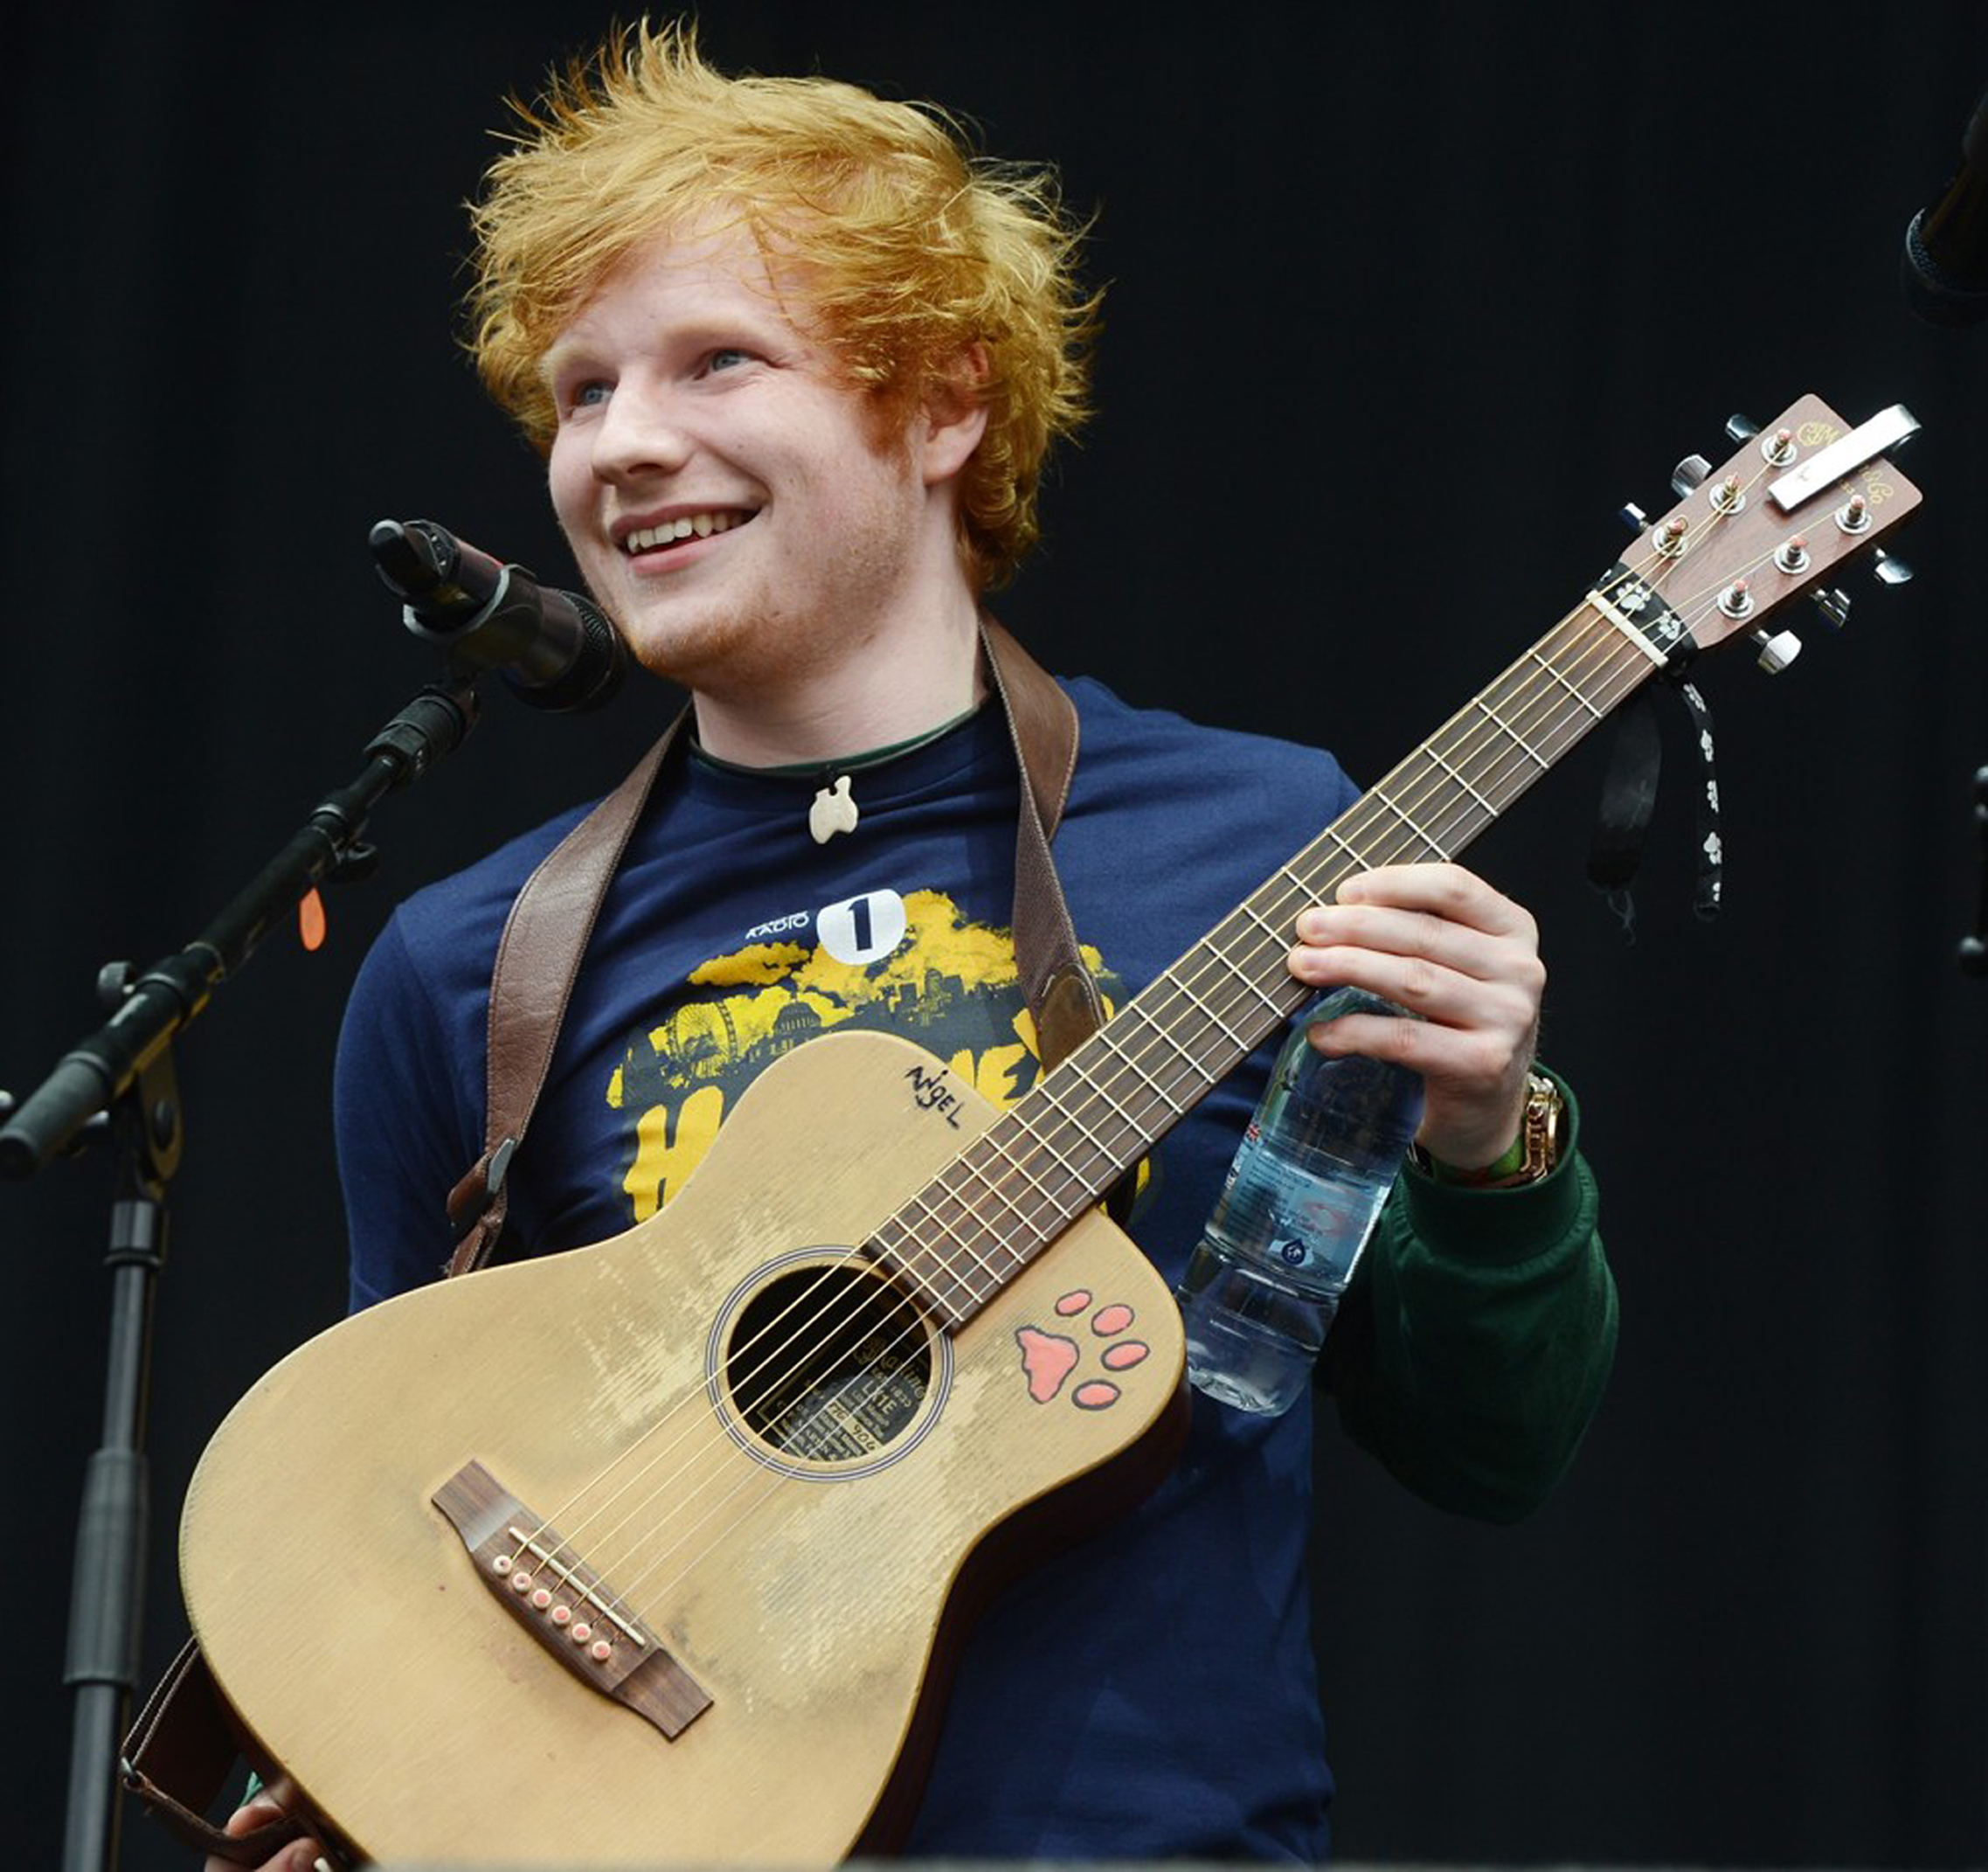 Ed Sheeran Little Martin Live , HD Wallpaper & Backgrounds